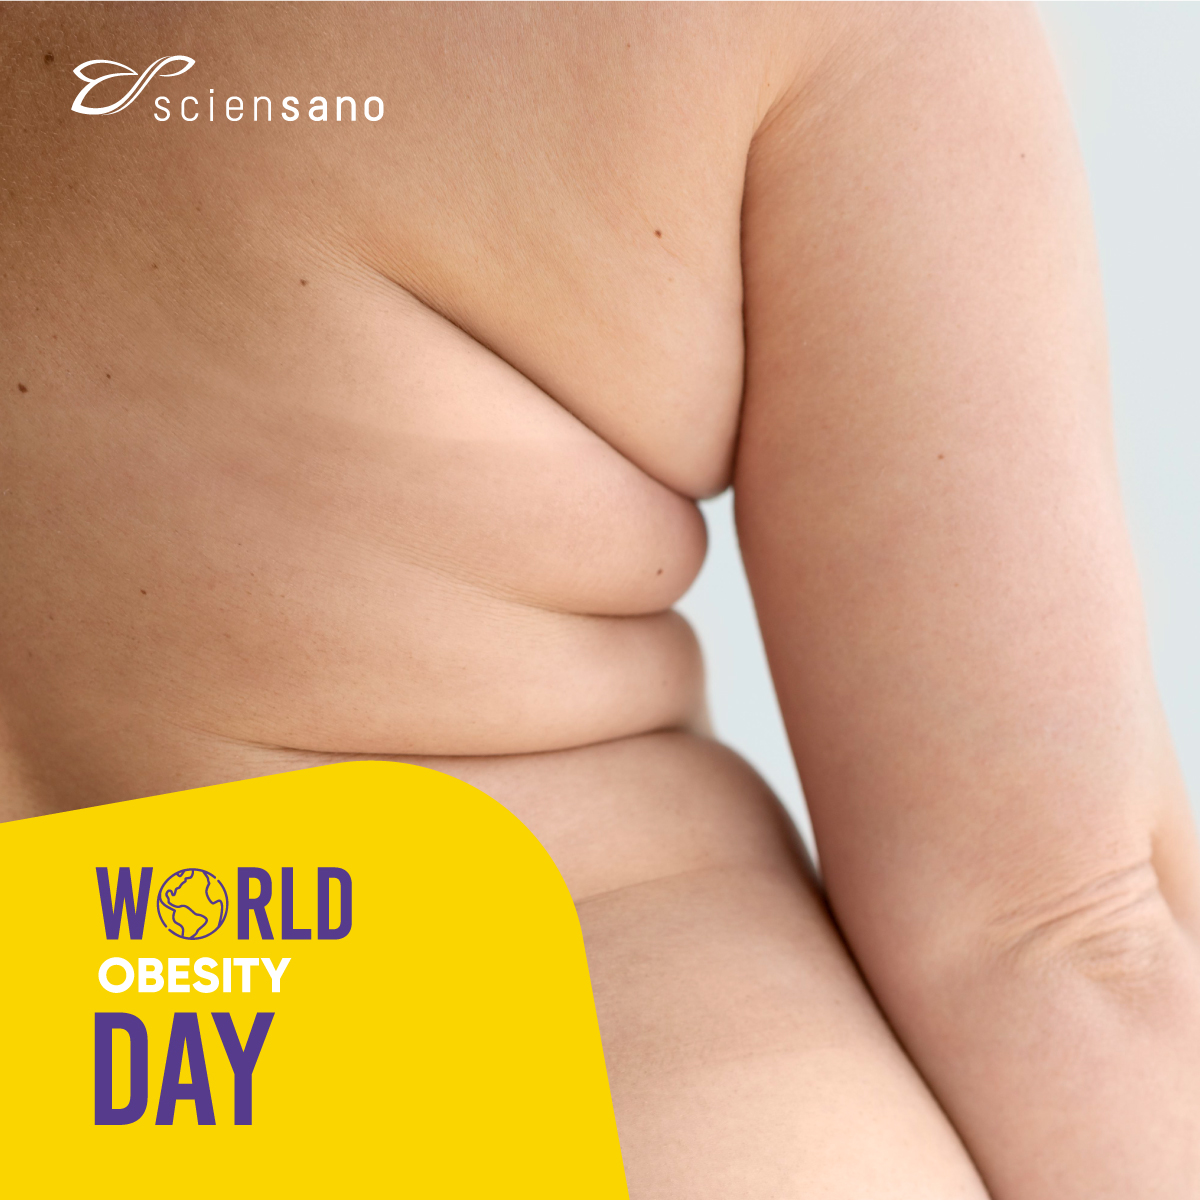 #WorldObesityDay | Volgens onze laatste cijfers heeft meer dan de helft van de Belgische bevolking overgewicht en lijdt naar schatting 16% aan obesitas. Mensen met overgewicht hebben meer kans op onder andere hart- en vaatziekten en kanker.